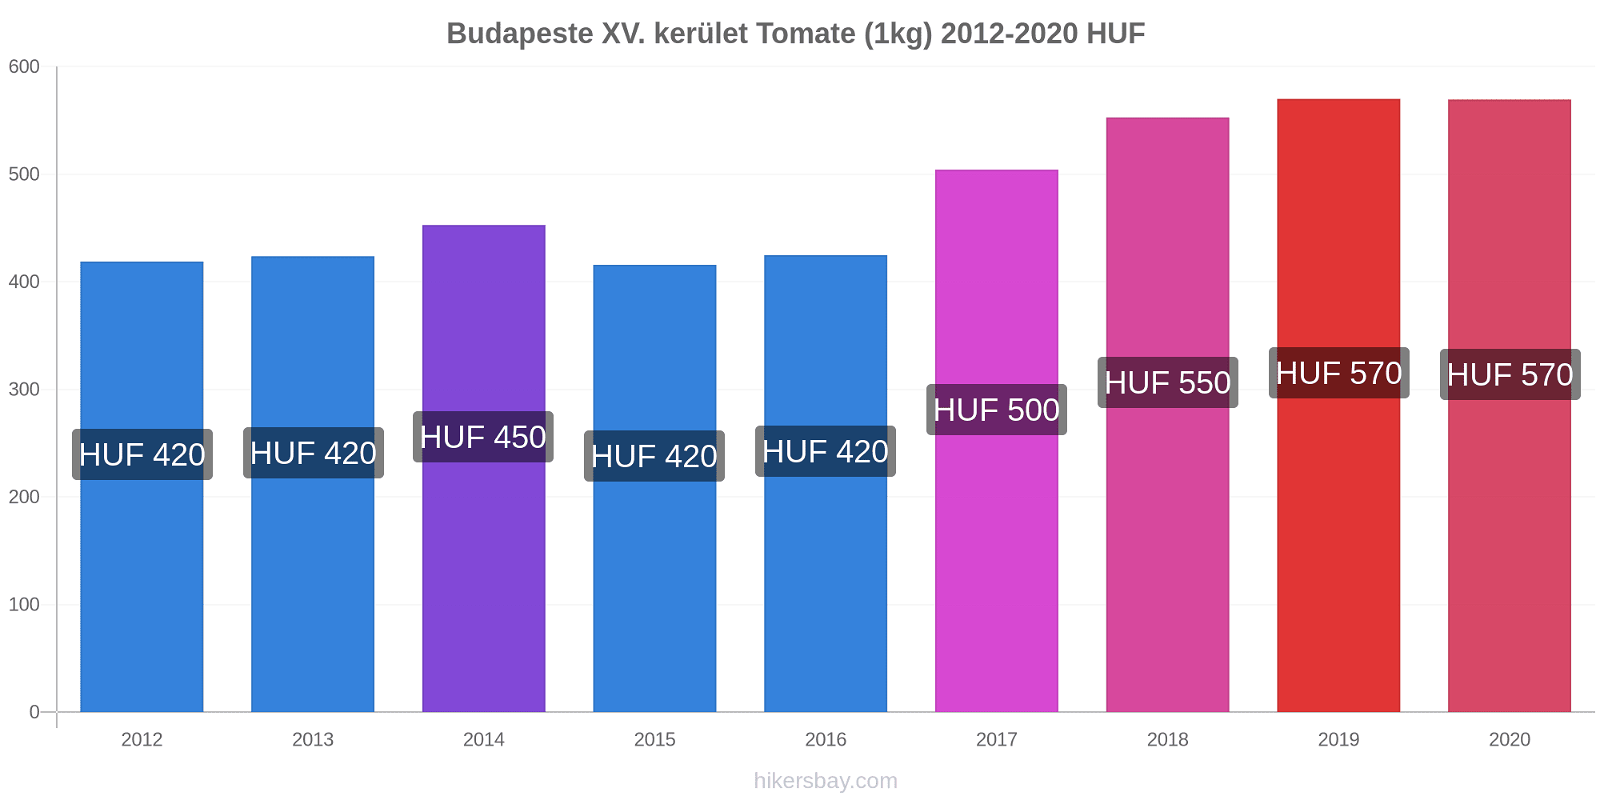 Budapeste XV. kerület variação de preço Tomate (1kg) hikersbay.com